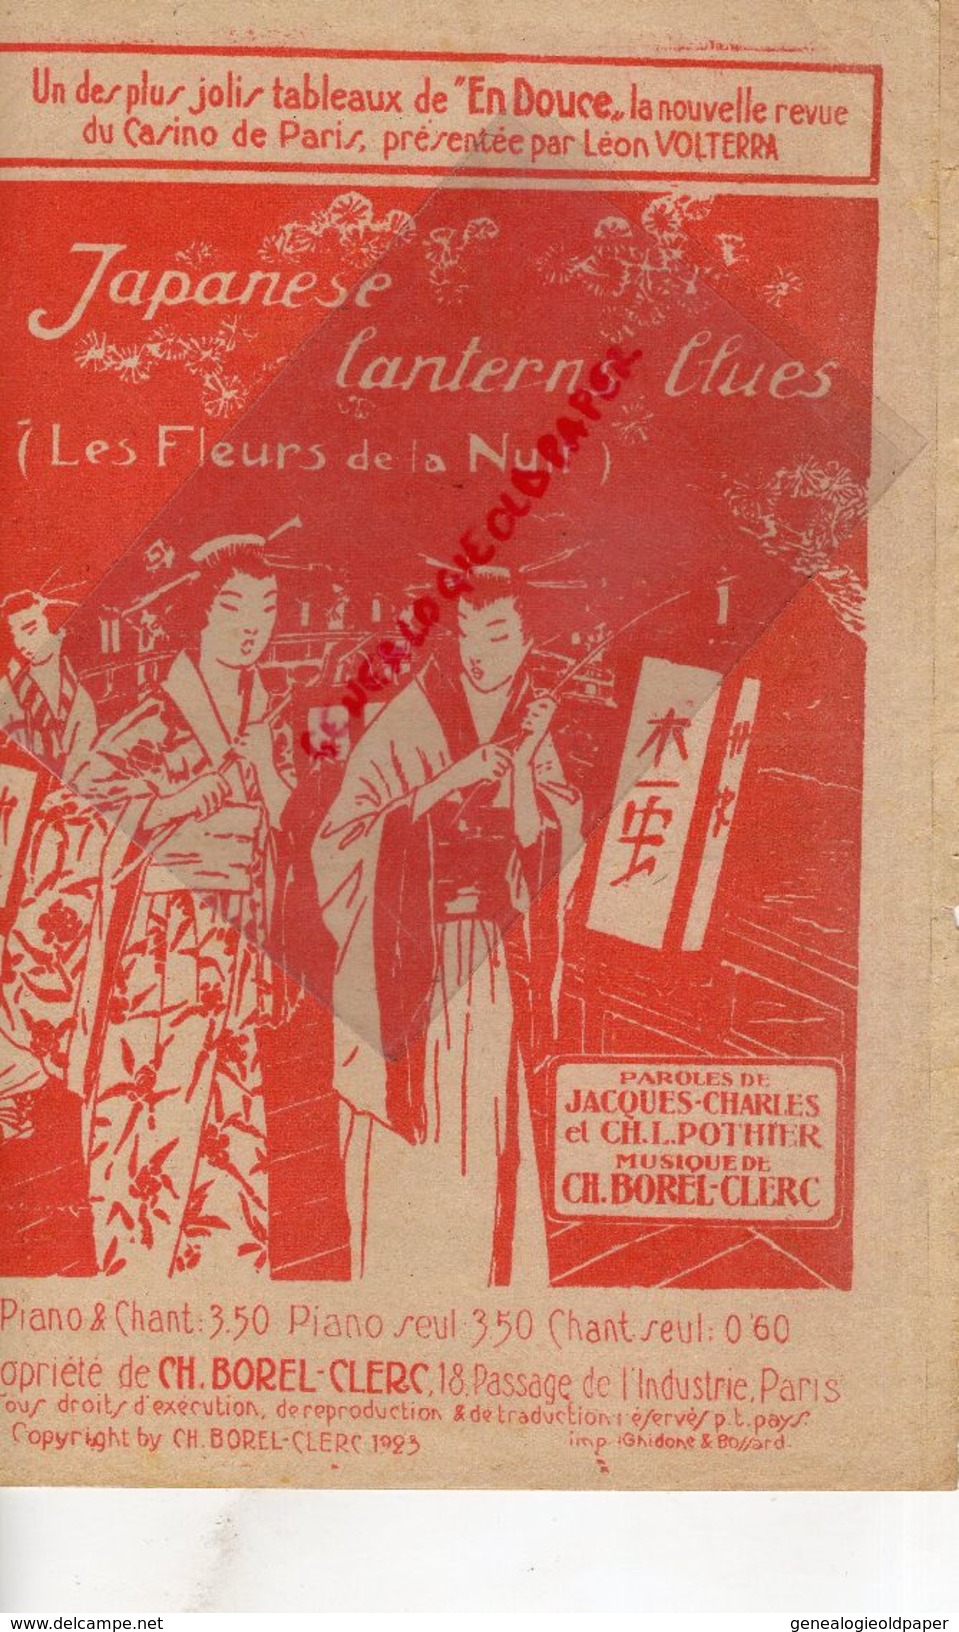 75-CASINO DE PARIS-LEON VOLTERRA-JAPANESE LANTERNES BLUES-FLEURS DE LA NUIT-JAPON-JACQUES CHARLES-POTHIER-CH. BOREL 1923 - Scores & Partitions